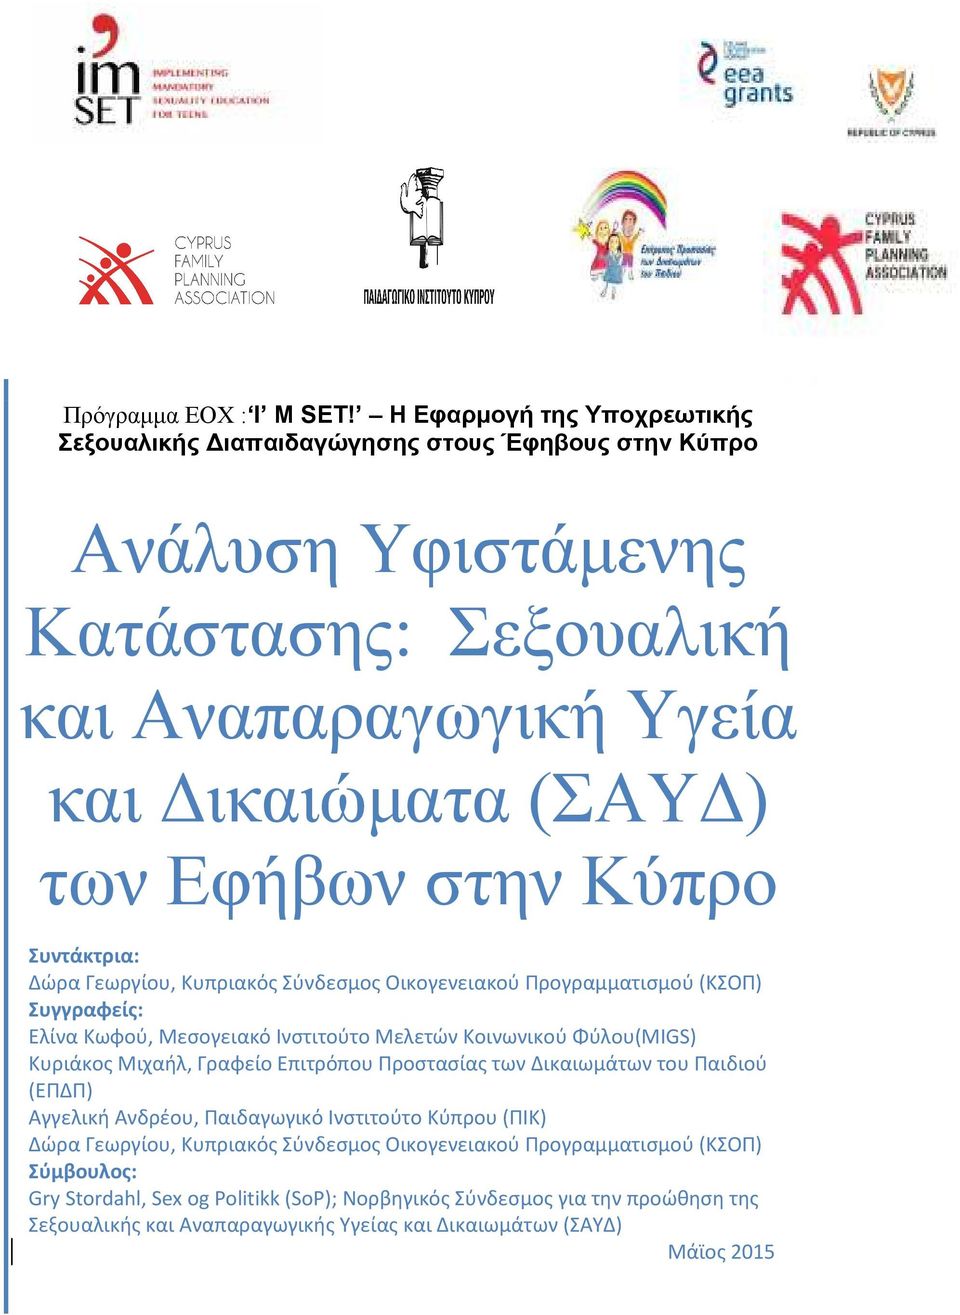 Κύπρο Συντάκτρια: Δώρα Γεωργίου, Κυπριακός Σύνδεσμος Οικογενειακού Προγραμματισμού (ΚΣΟΠ) Συγγραφείς: Ελίνα Κωφού, Μεσογειακό Ινστιτούτο Μελετών Κοινωνικού Φύλου(MIGS) Κυριάκος Μιχαήλ,